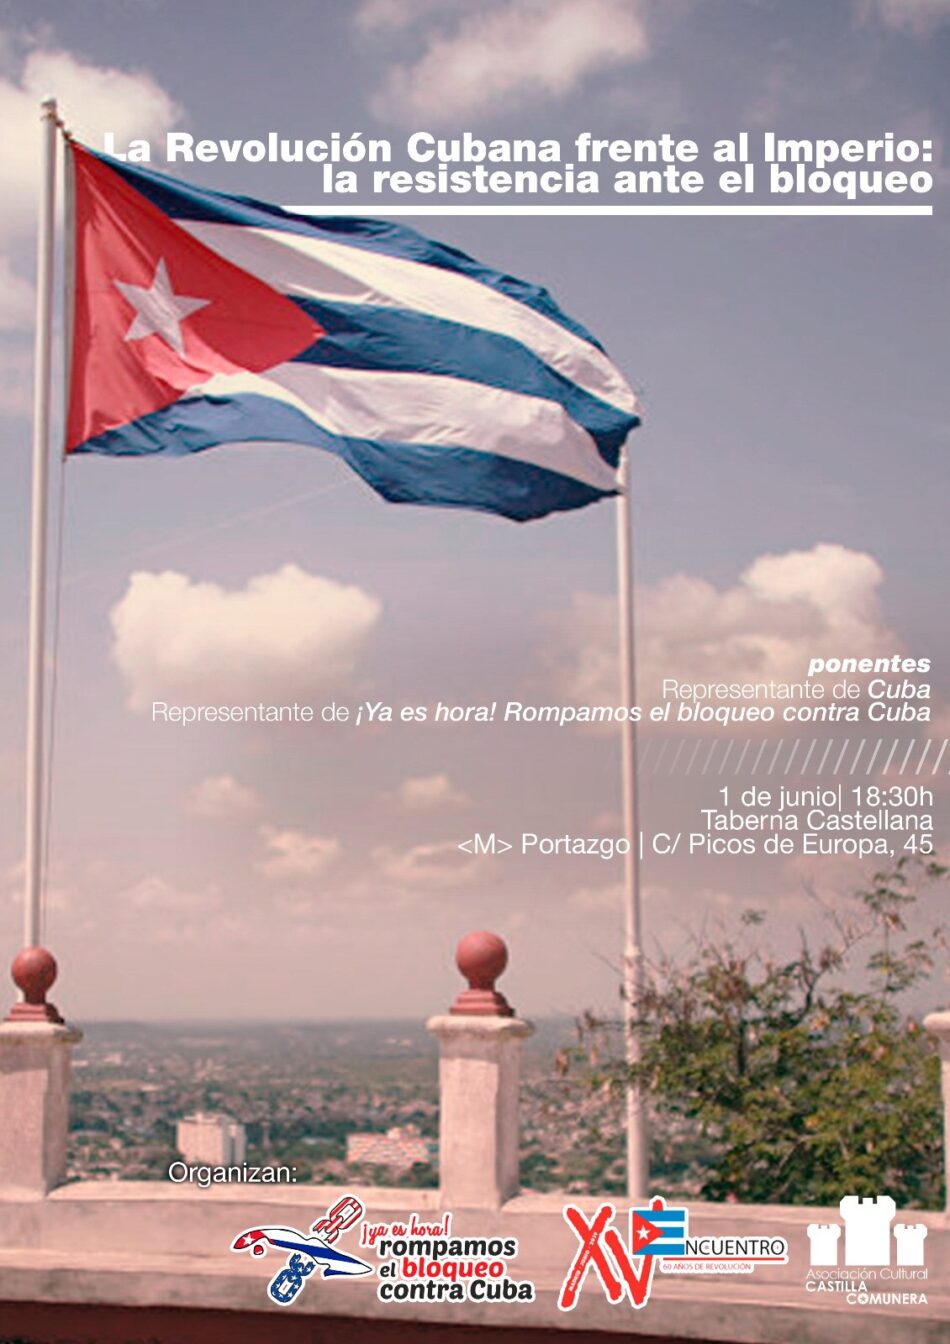 La Revolución Cubana frente al imperio: la resistencia ante el bloqueo